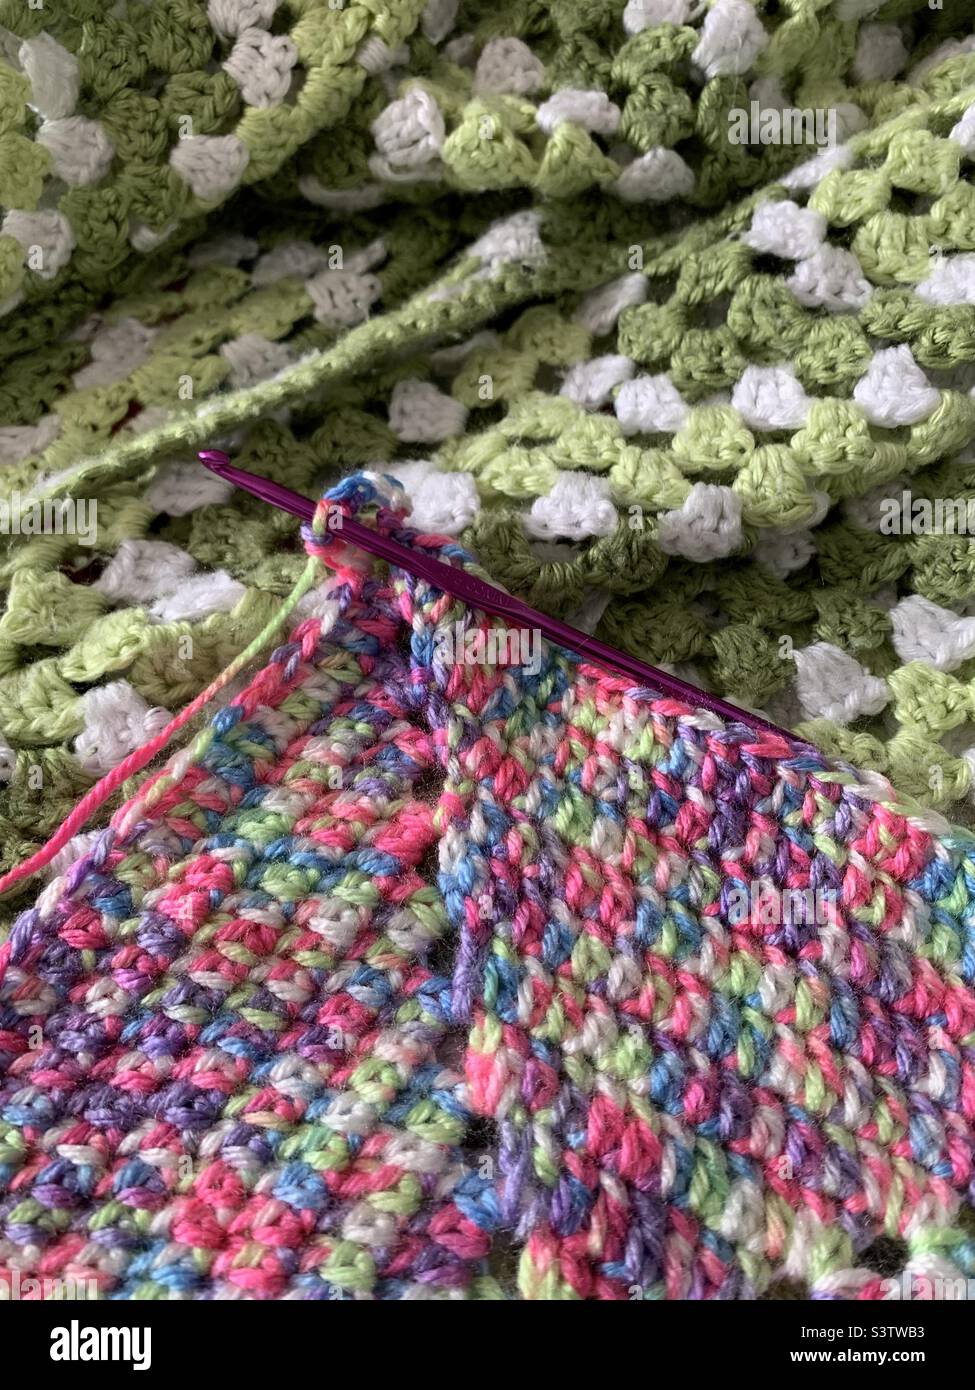 Caron Cloud Cakes Crochet Afghan - The Burgundy Basket